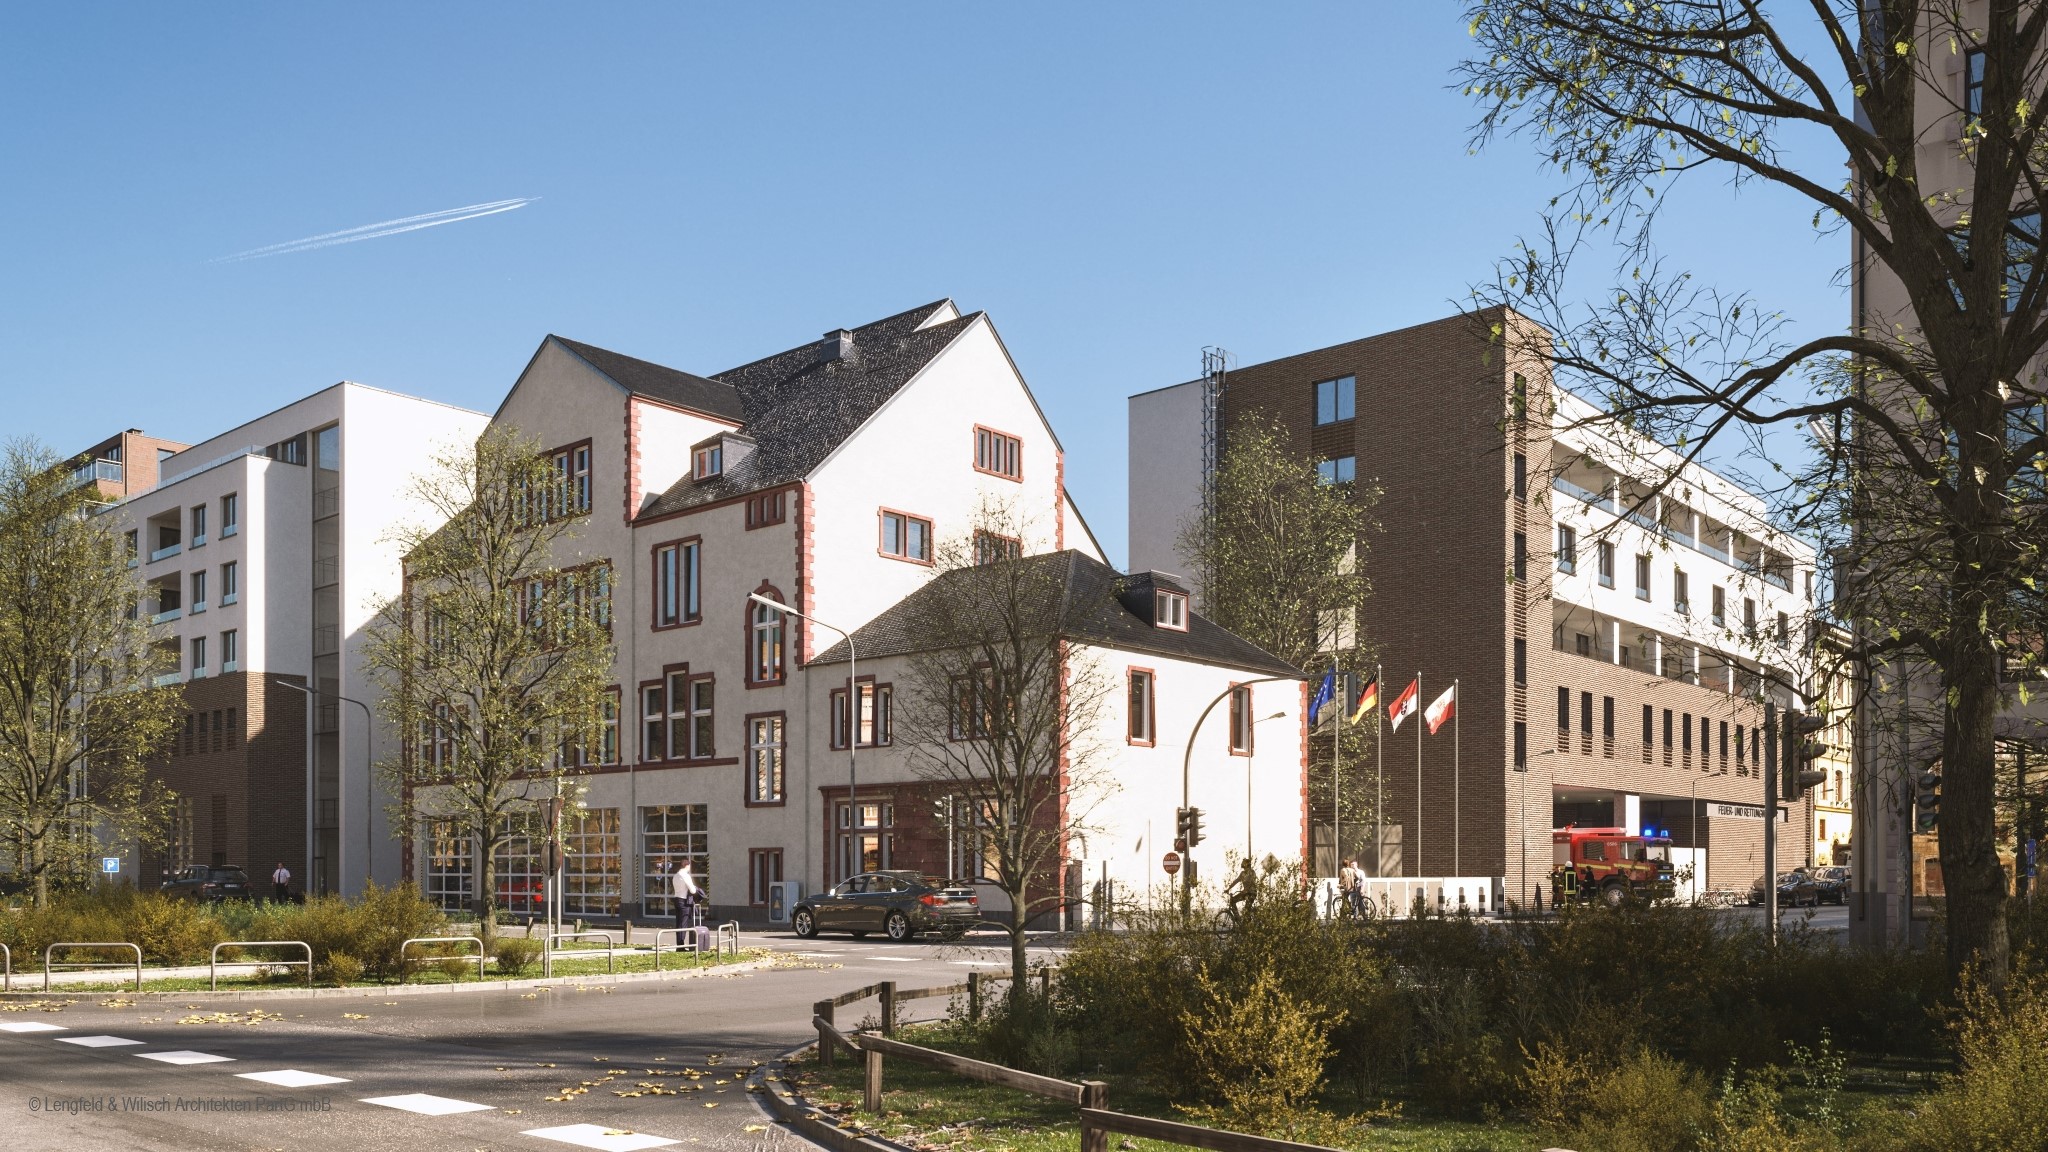 Feuer- und Rettungswache 2 | Gallus | Visualisierung des Neubaus ab 2025 | © Lengfeld & Wilisch Architekten PartG mbH 